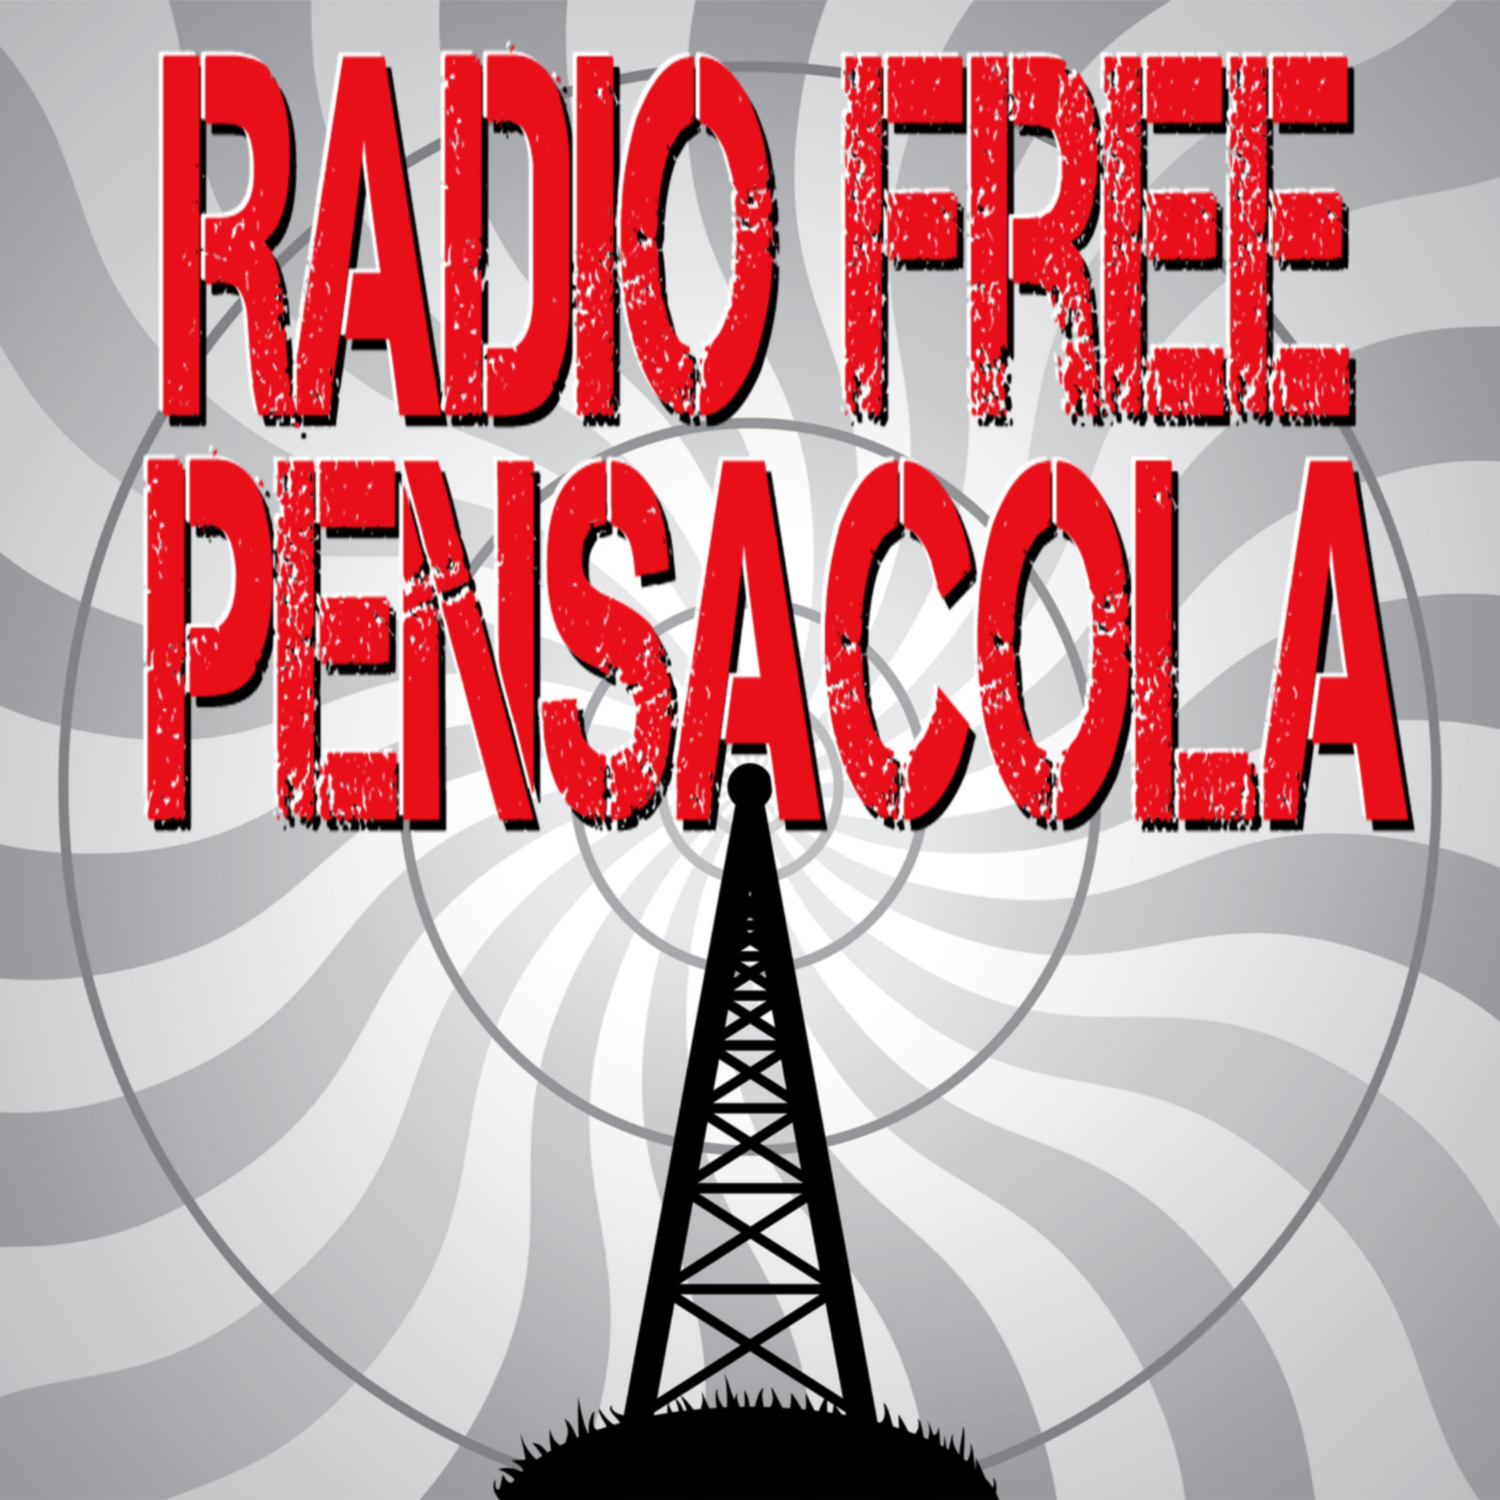 Radio Free Pensacola